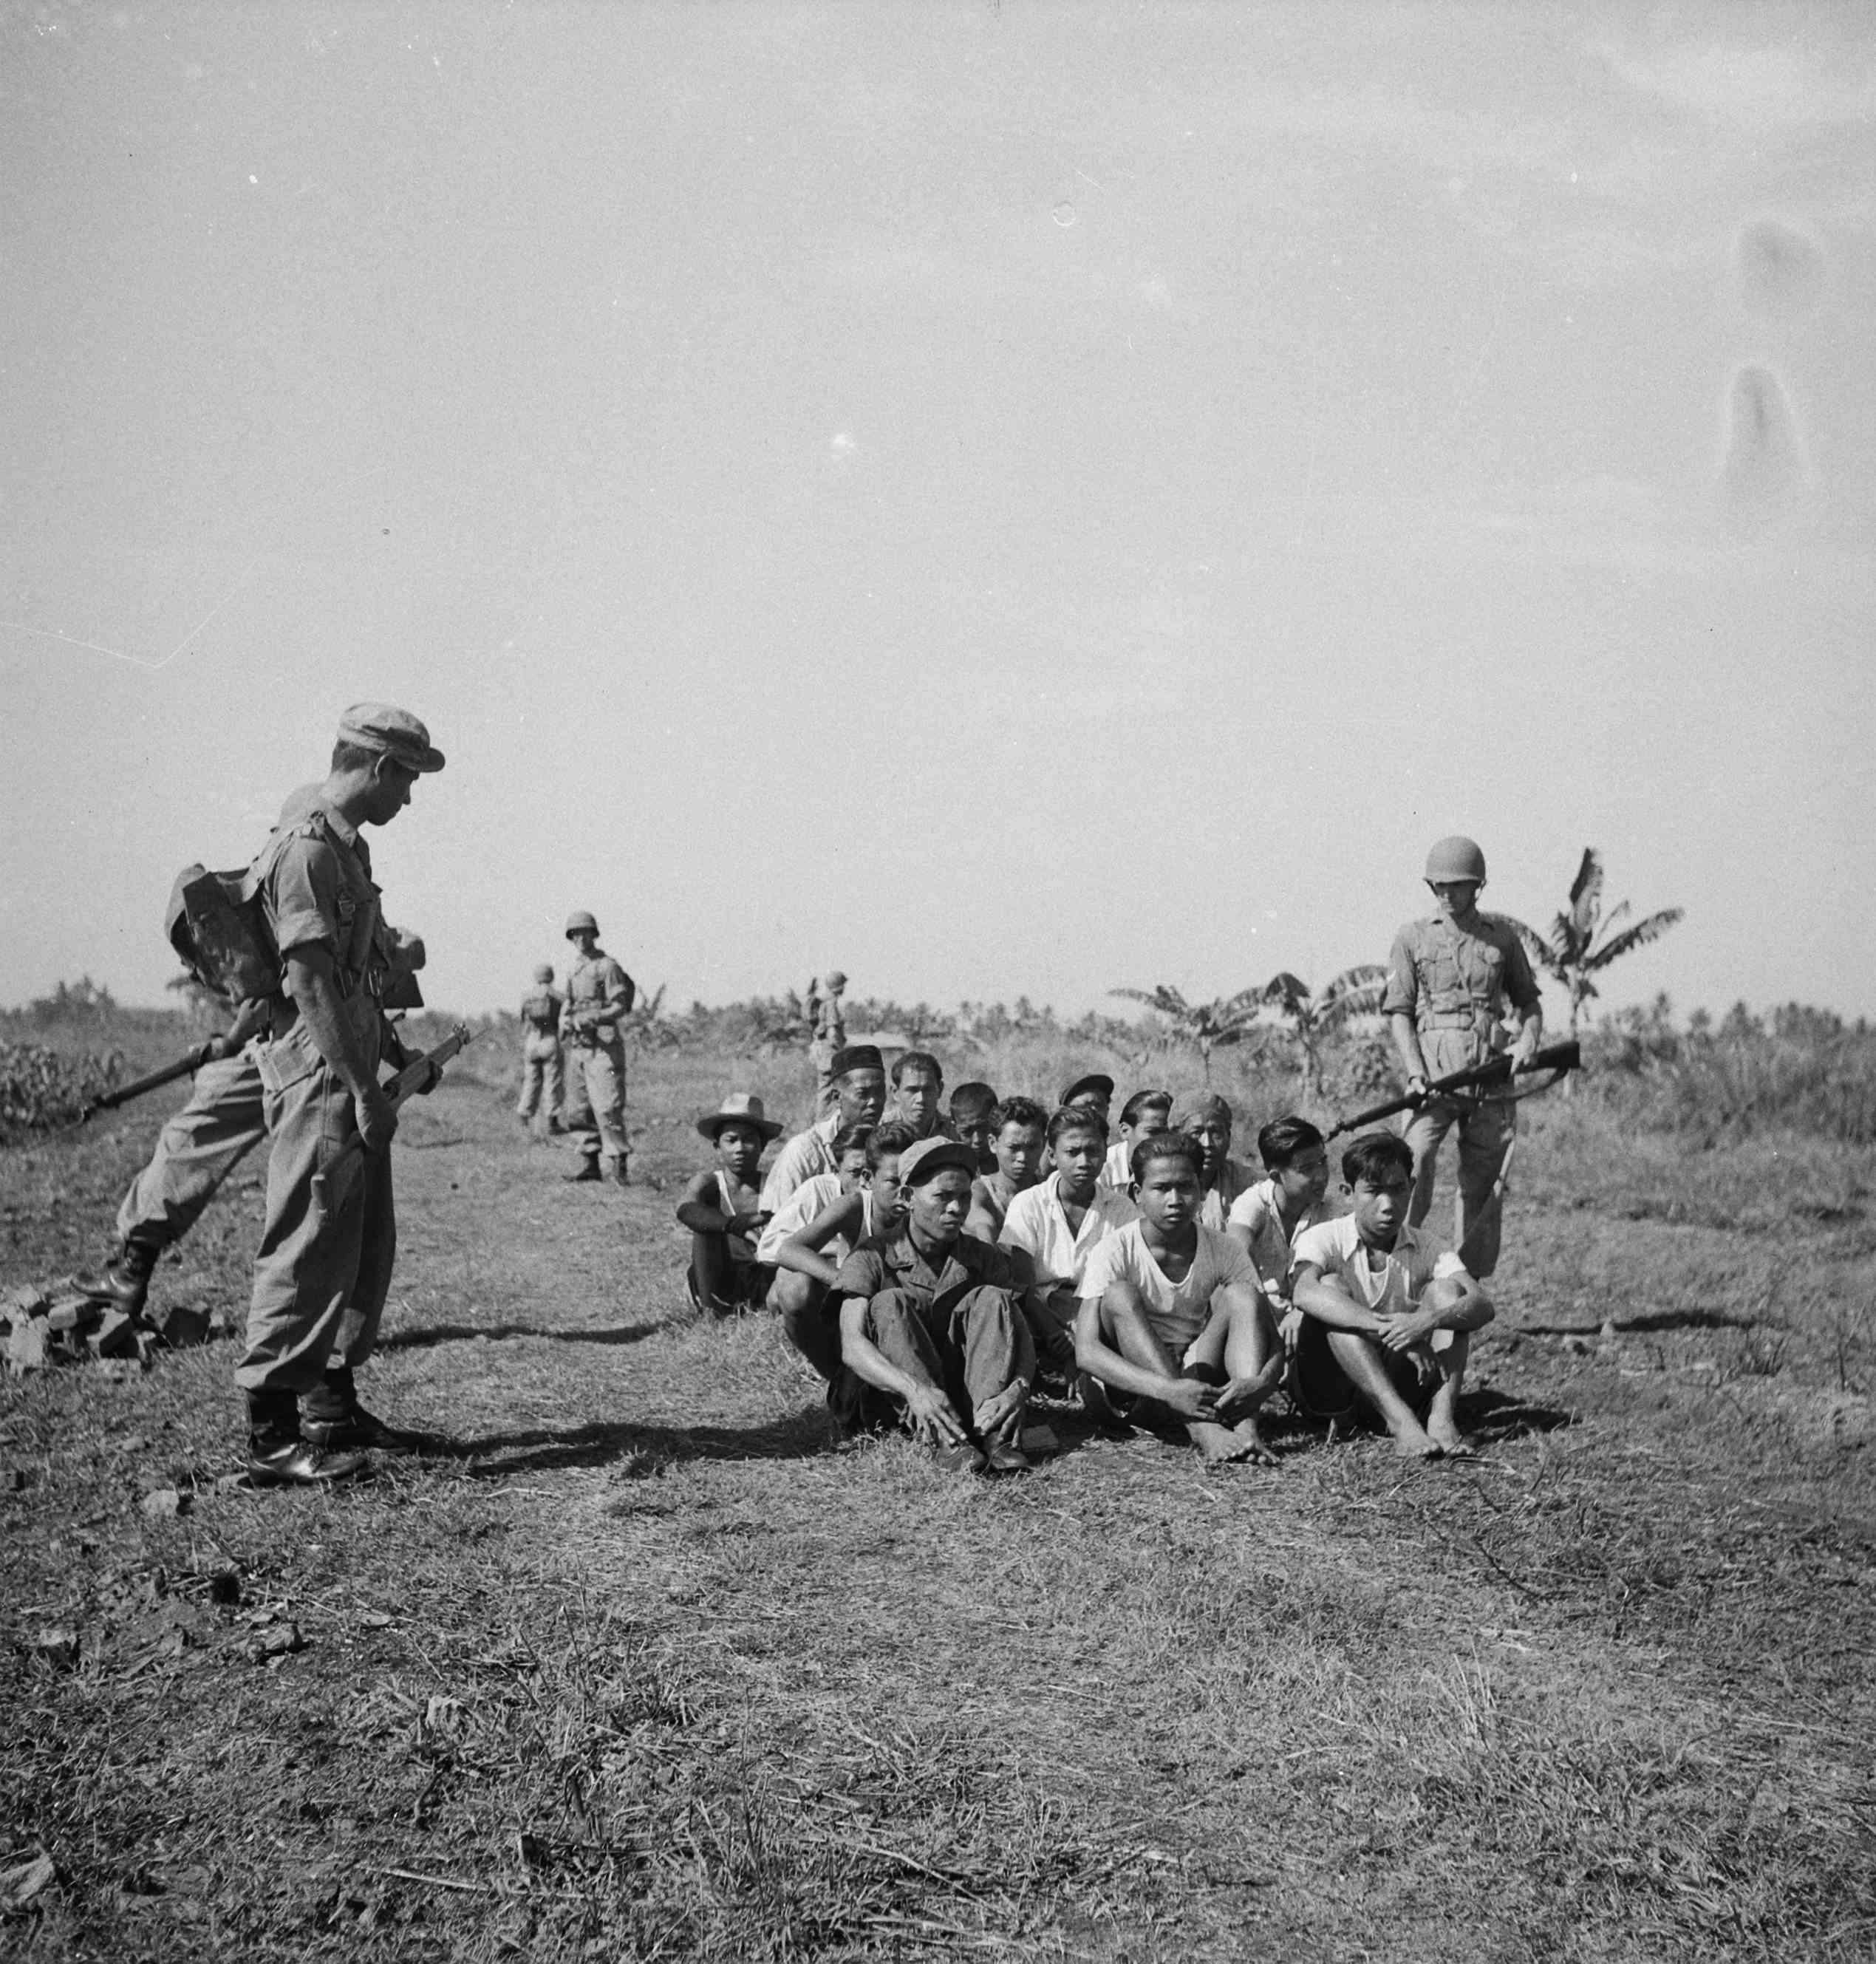 Голландські солдати в Індонезії під час Індонезійської національної революції, 1946 рік. Колонізація